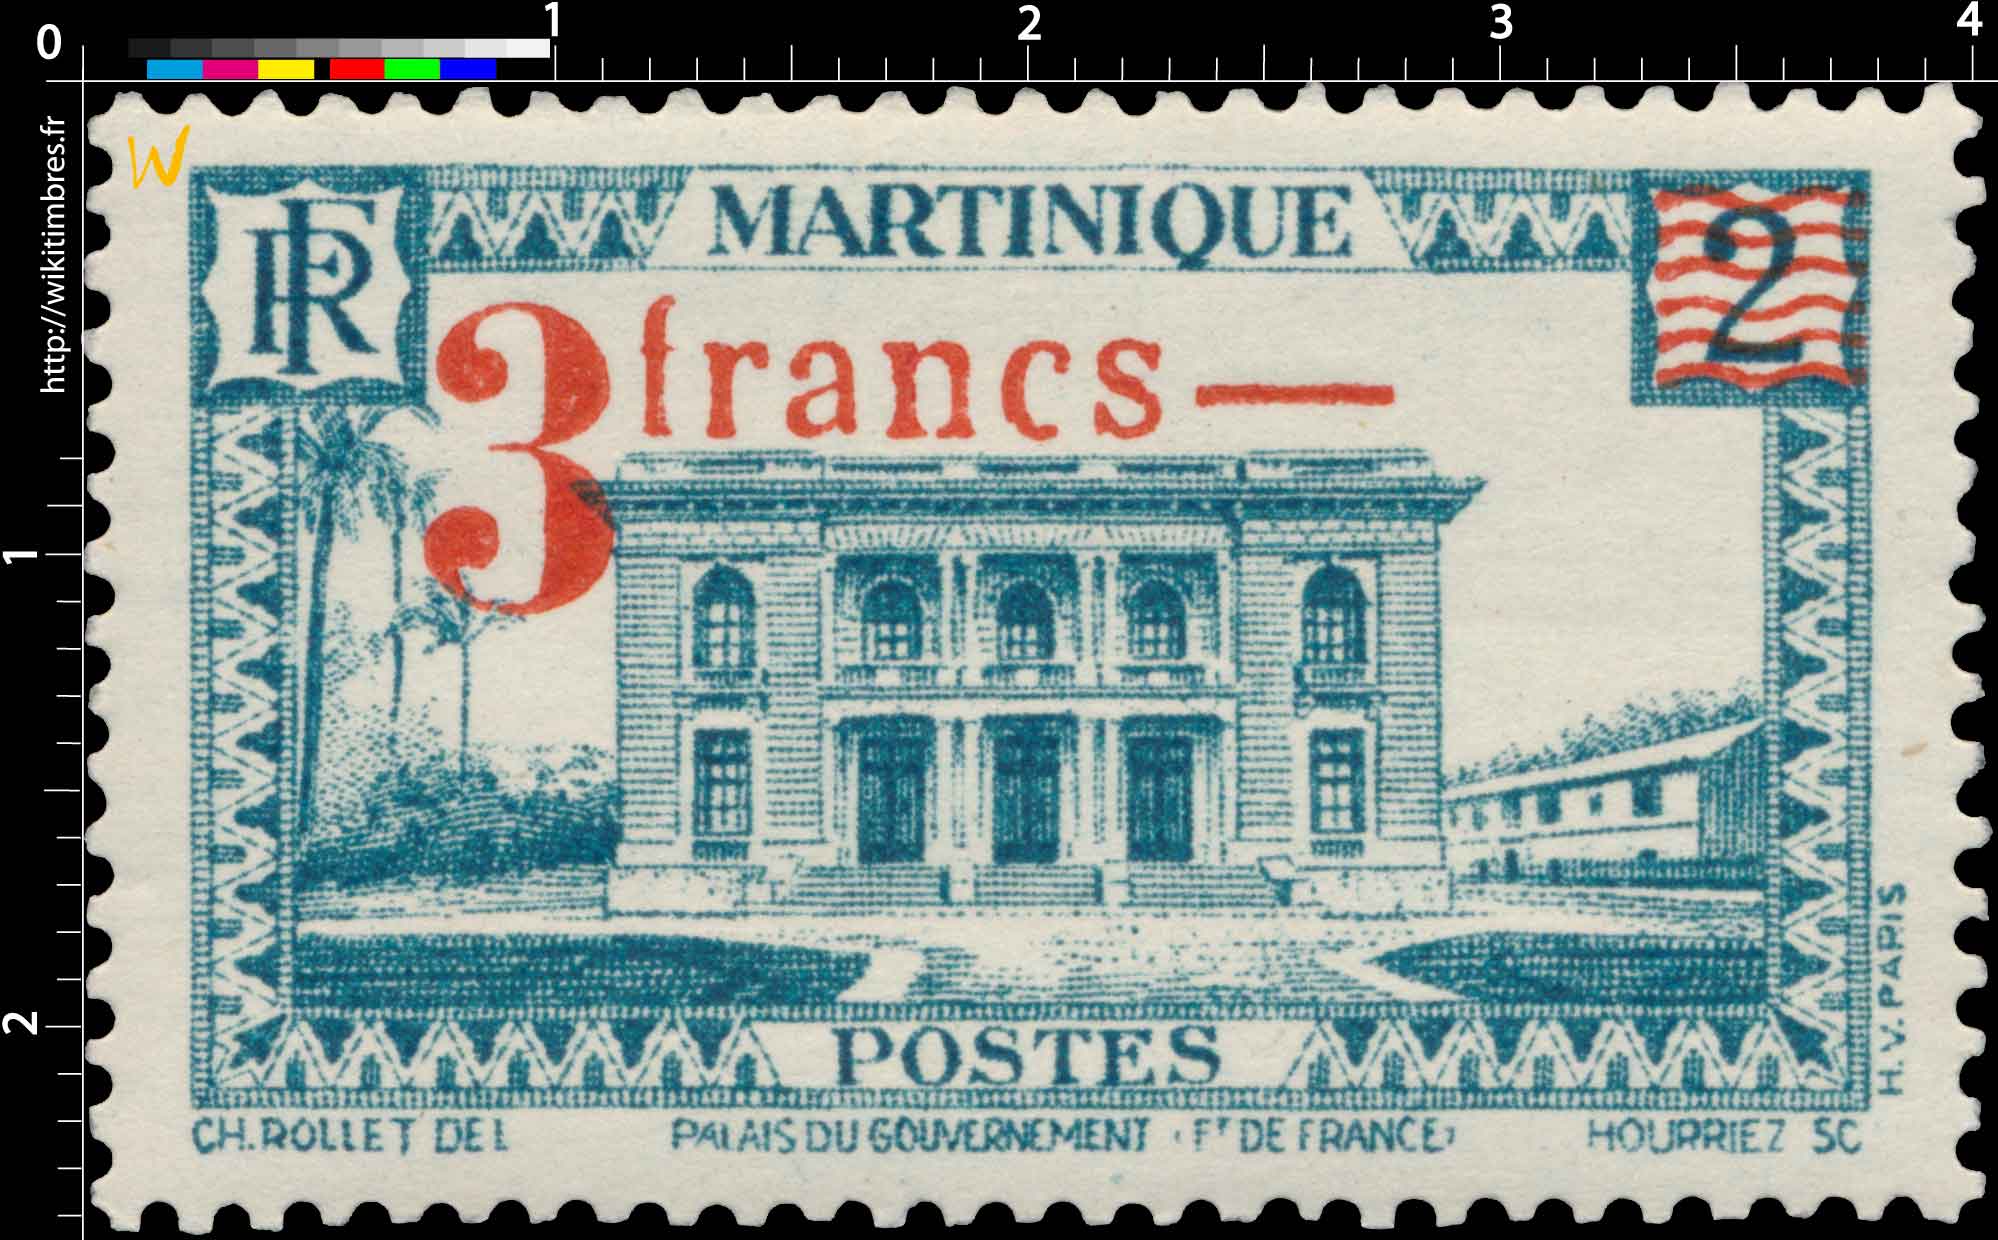 MARTINIQUE Palais du gouvernement Ft de France